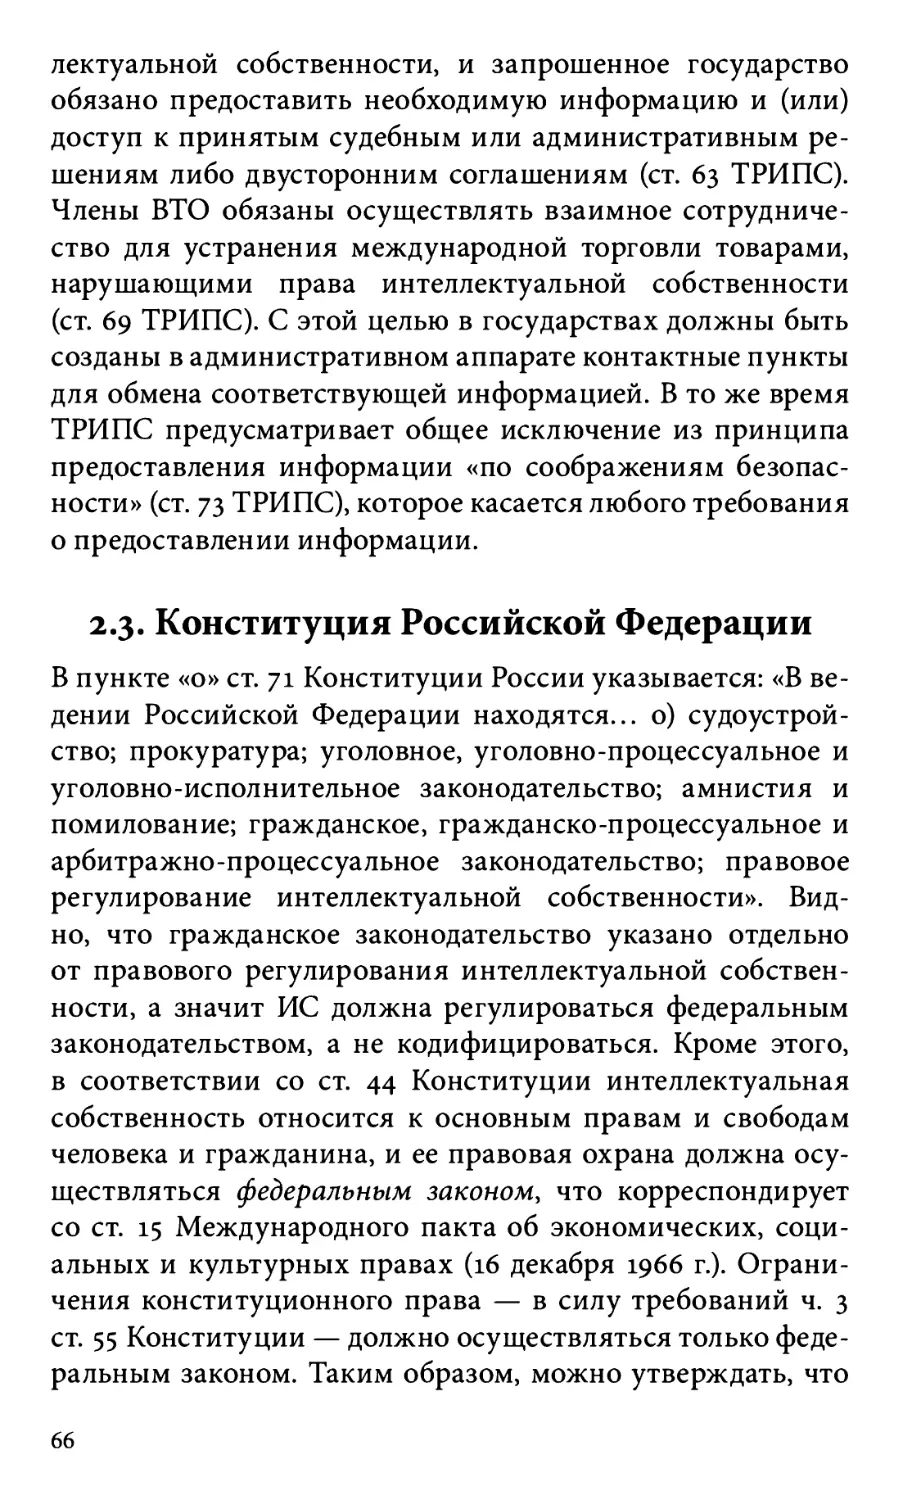 2.3. Конституция Российской Федерации